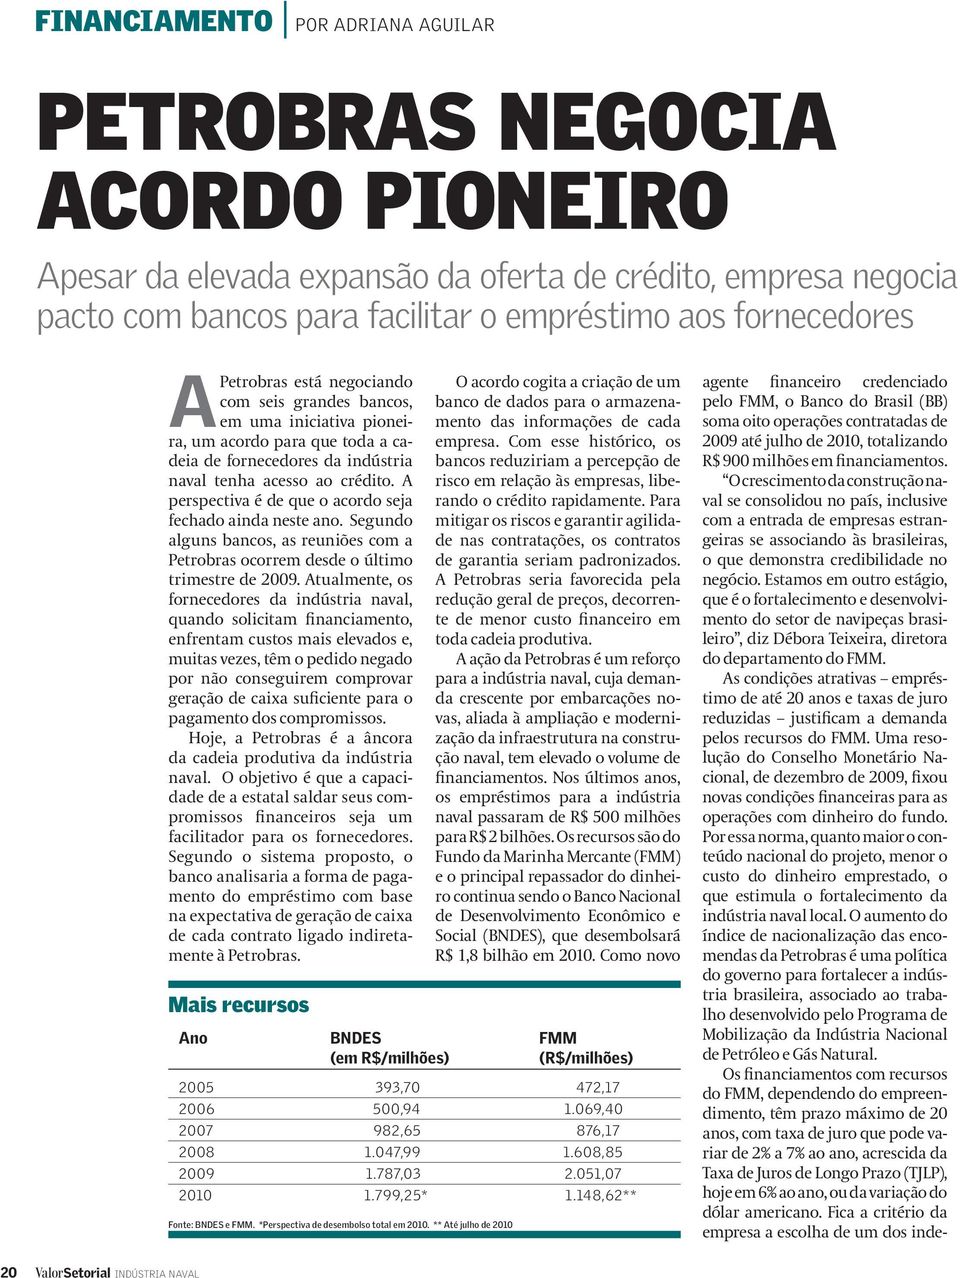 crédito. A perspectiva é de que o acordo seja fechado ainda neste ano. Segundo alguns bancos, as reuniões com a Petrobras ocorrem desde o último trimestre de 2009.